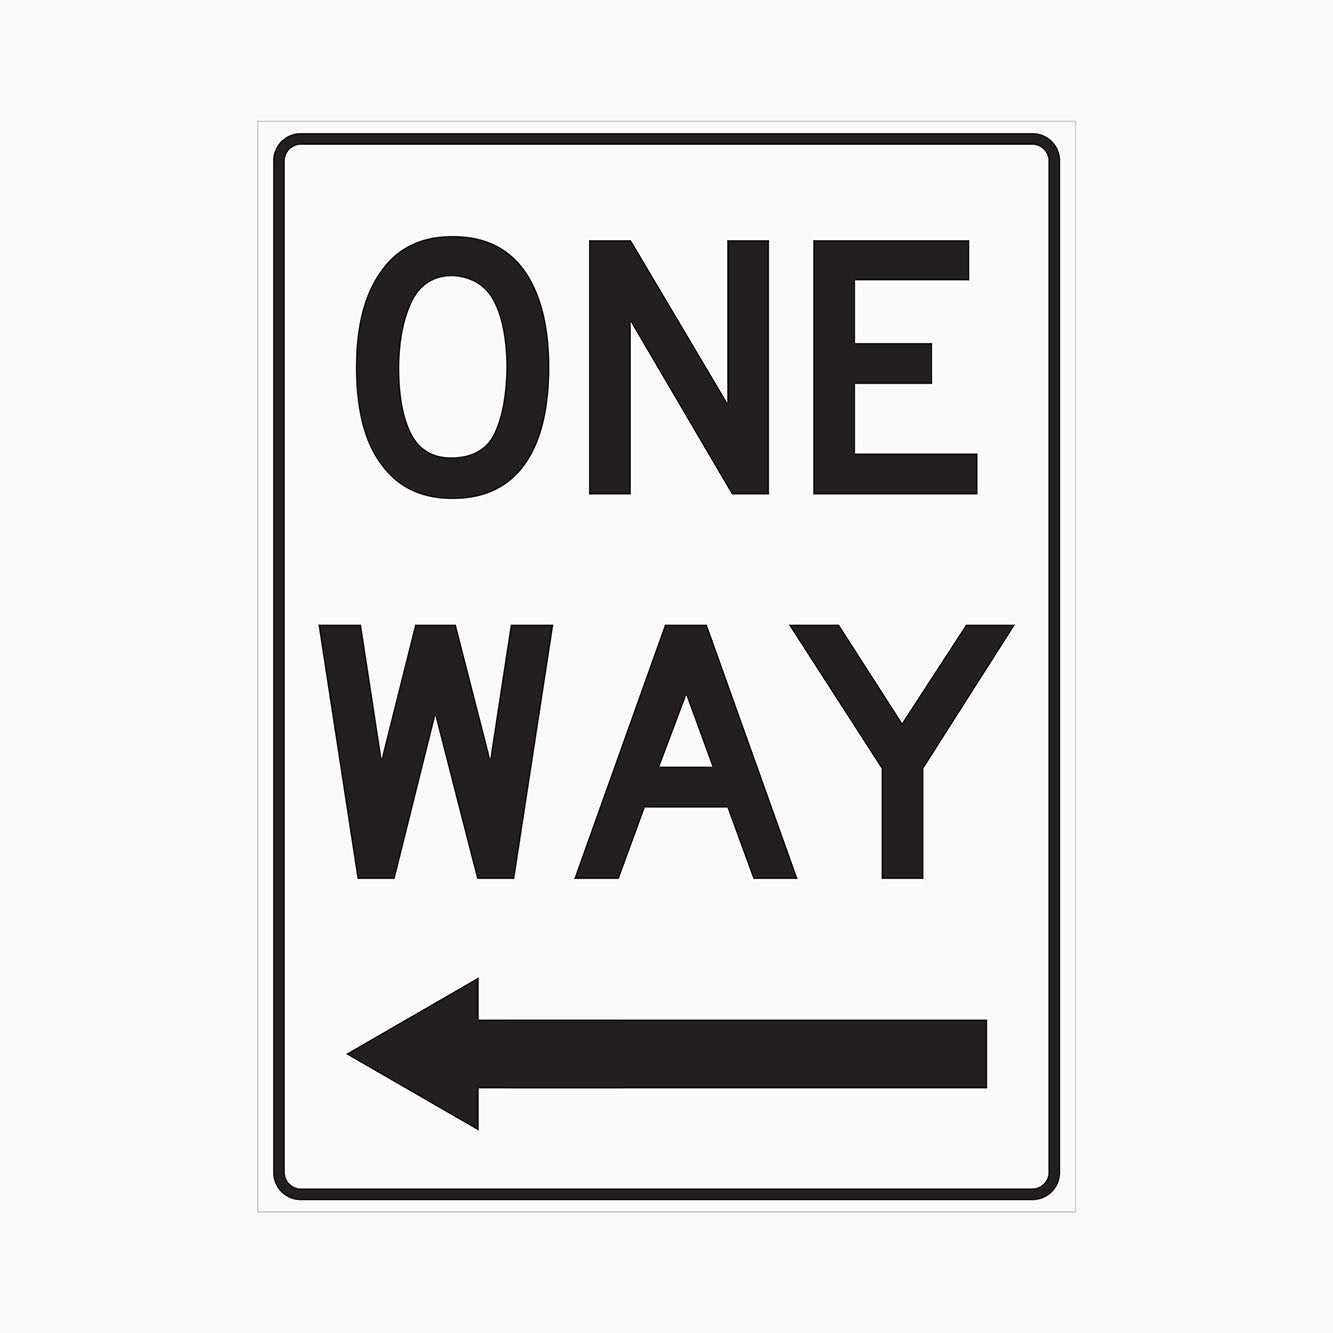 ONE WAY SIGN - LEFT ARROW